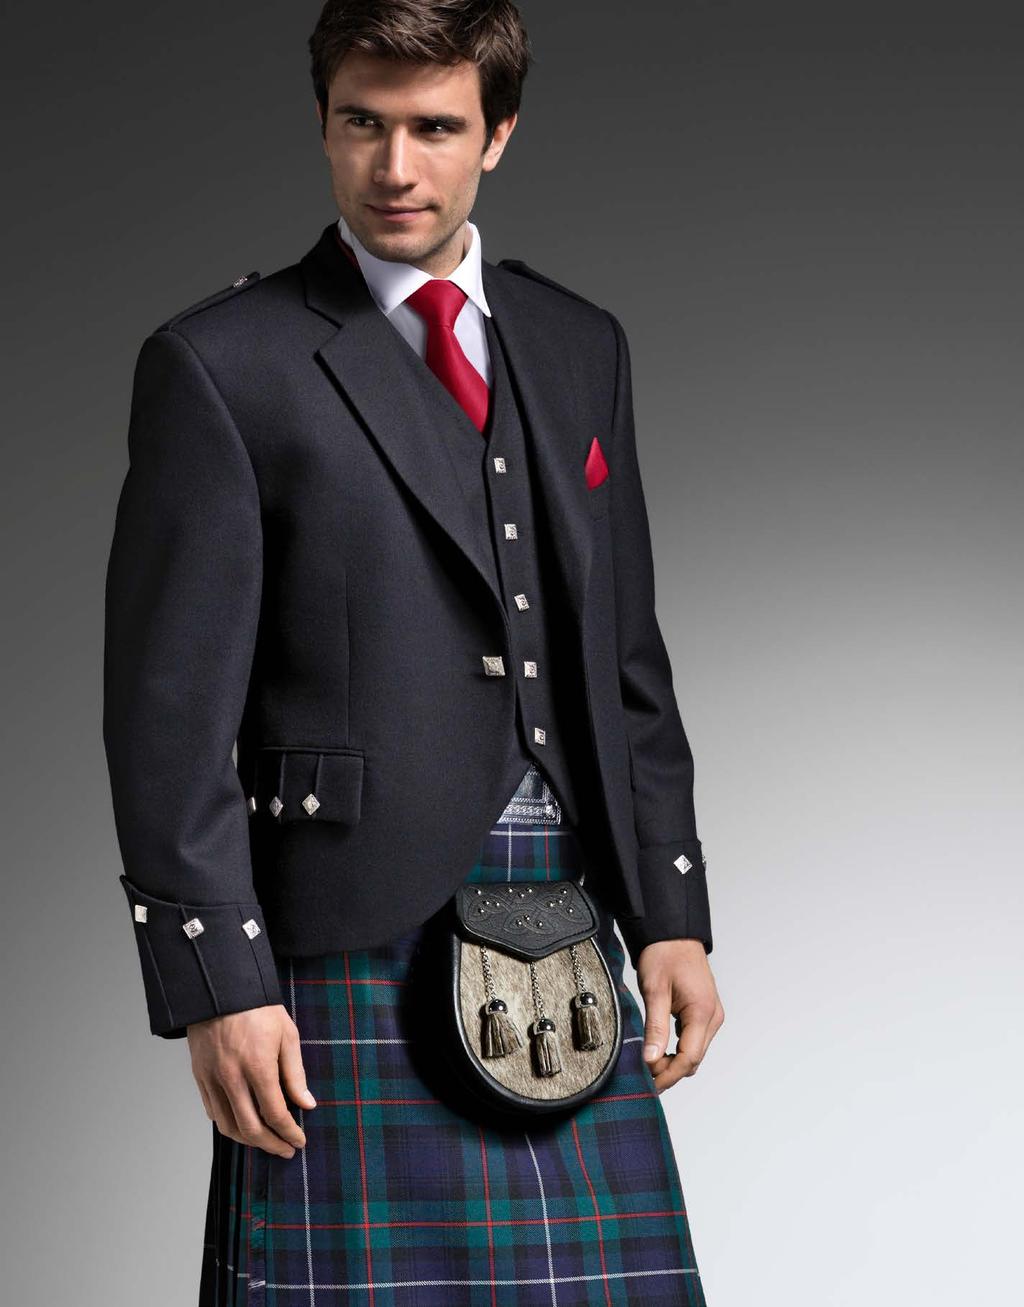 Spirit of Scotland Kilt Worn with Dark Button Argyll Jacket, High Button Waistcoat, Victorian Collar Shirt, Dark Cantle Sporran, Purple Ruche and matching Hankie Argyll